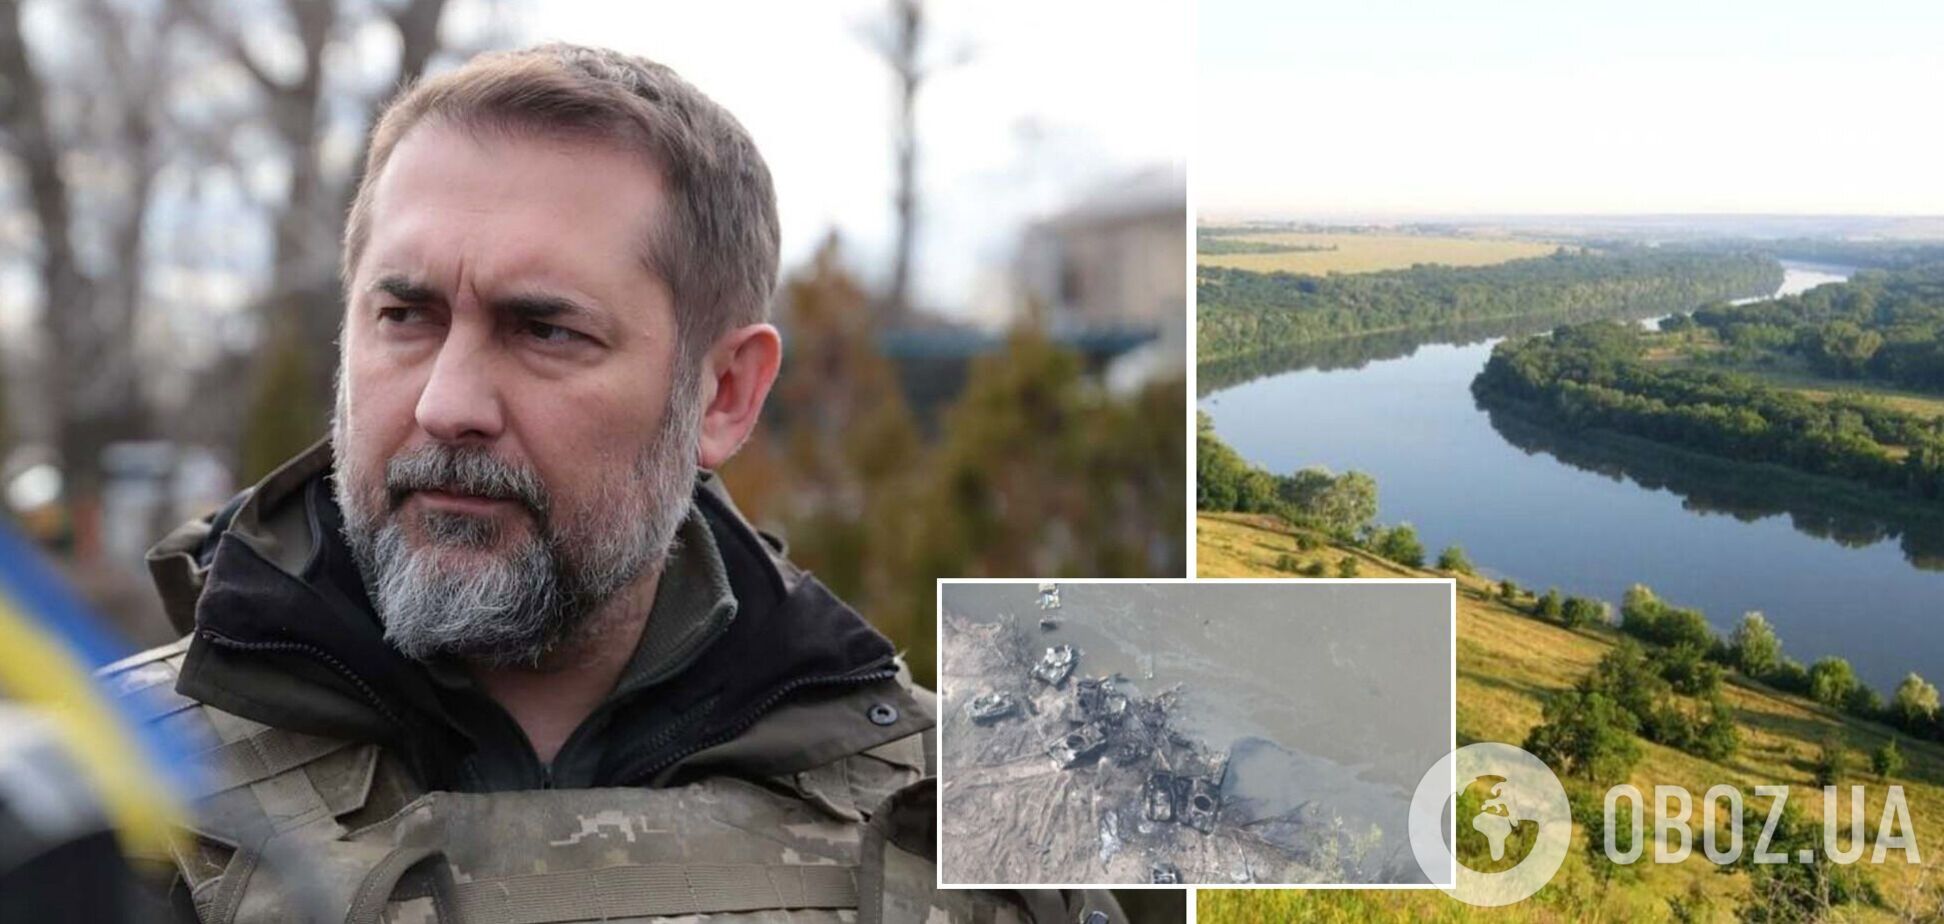 Рівень води в Сіверському Донці впав, окупанти можуть знову спробувати почати переправу, – Гайдай